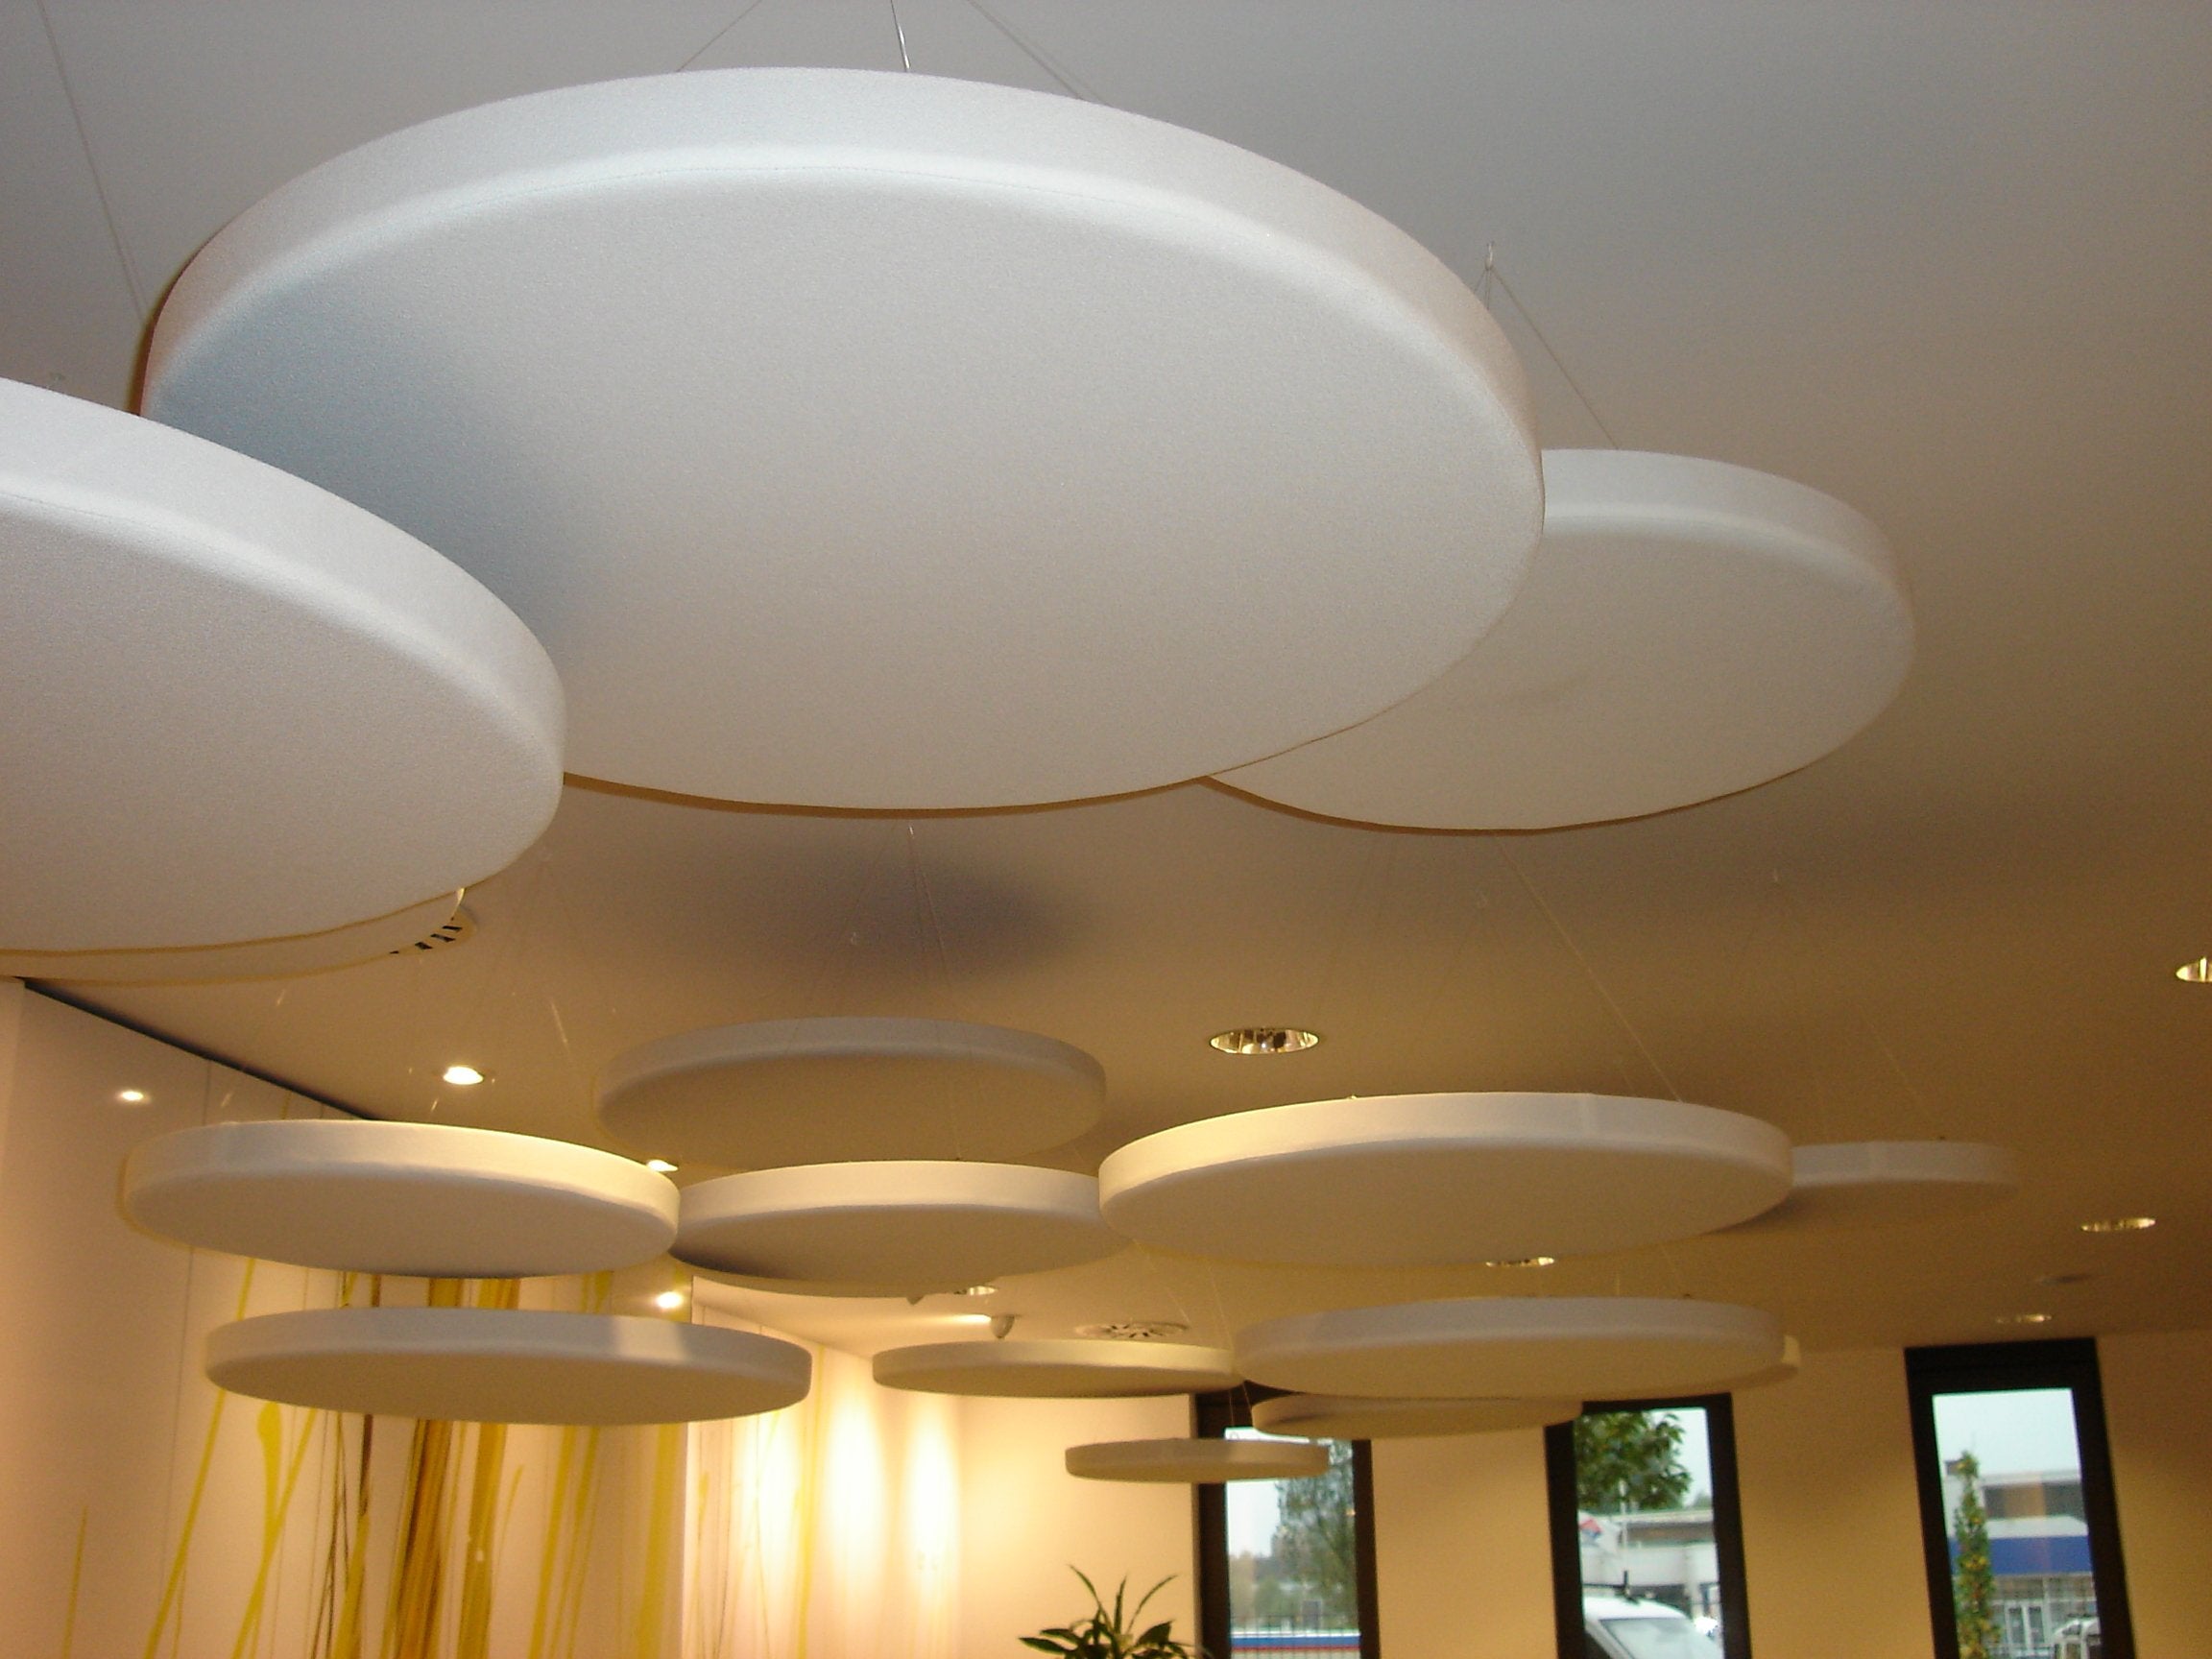 Cloud9 100cm Ceiling Suspended Acoustic Panel - Advanced Acoustics